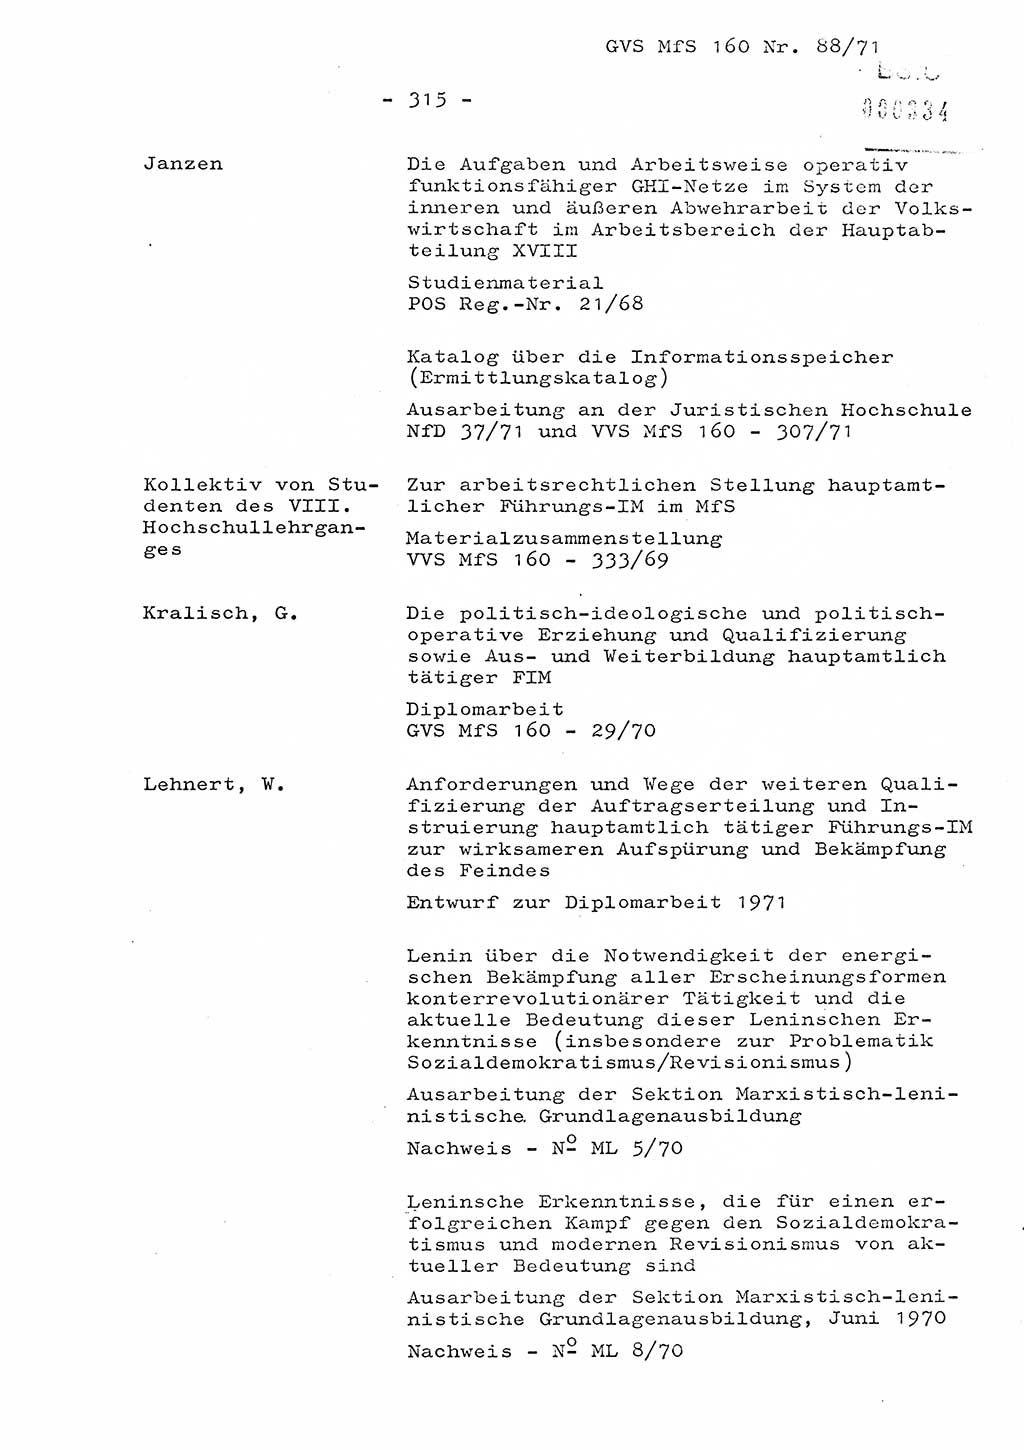 Dissertation Oberstleutnant Josef Schwarz (BV Schwerin), Major Fritz Amm (JHS), Hauptmann Peter Gräßler (JHS), Ministerium für Staatssicherheit (MfS) [Deutsche Demokratische Republik (DDR)], Juristische Hochschule (JHS), Geheime Verschlußsache (GVS) 160-88/71, Potsdam 1972, Seite 315 (Diss. MfS DDR JHS GVS 160-88/71 1972, S. 315)